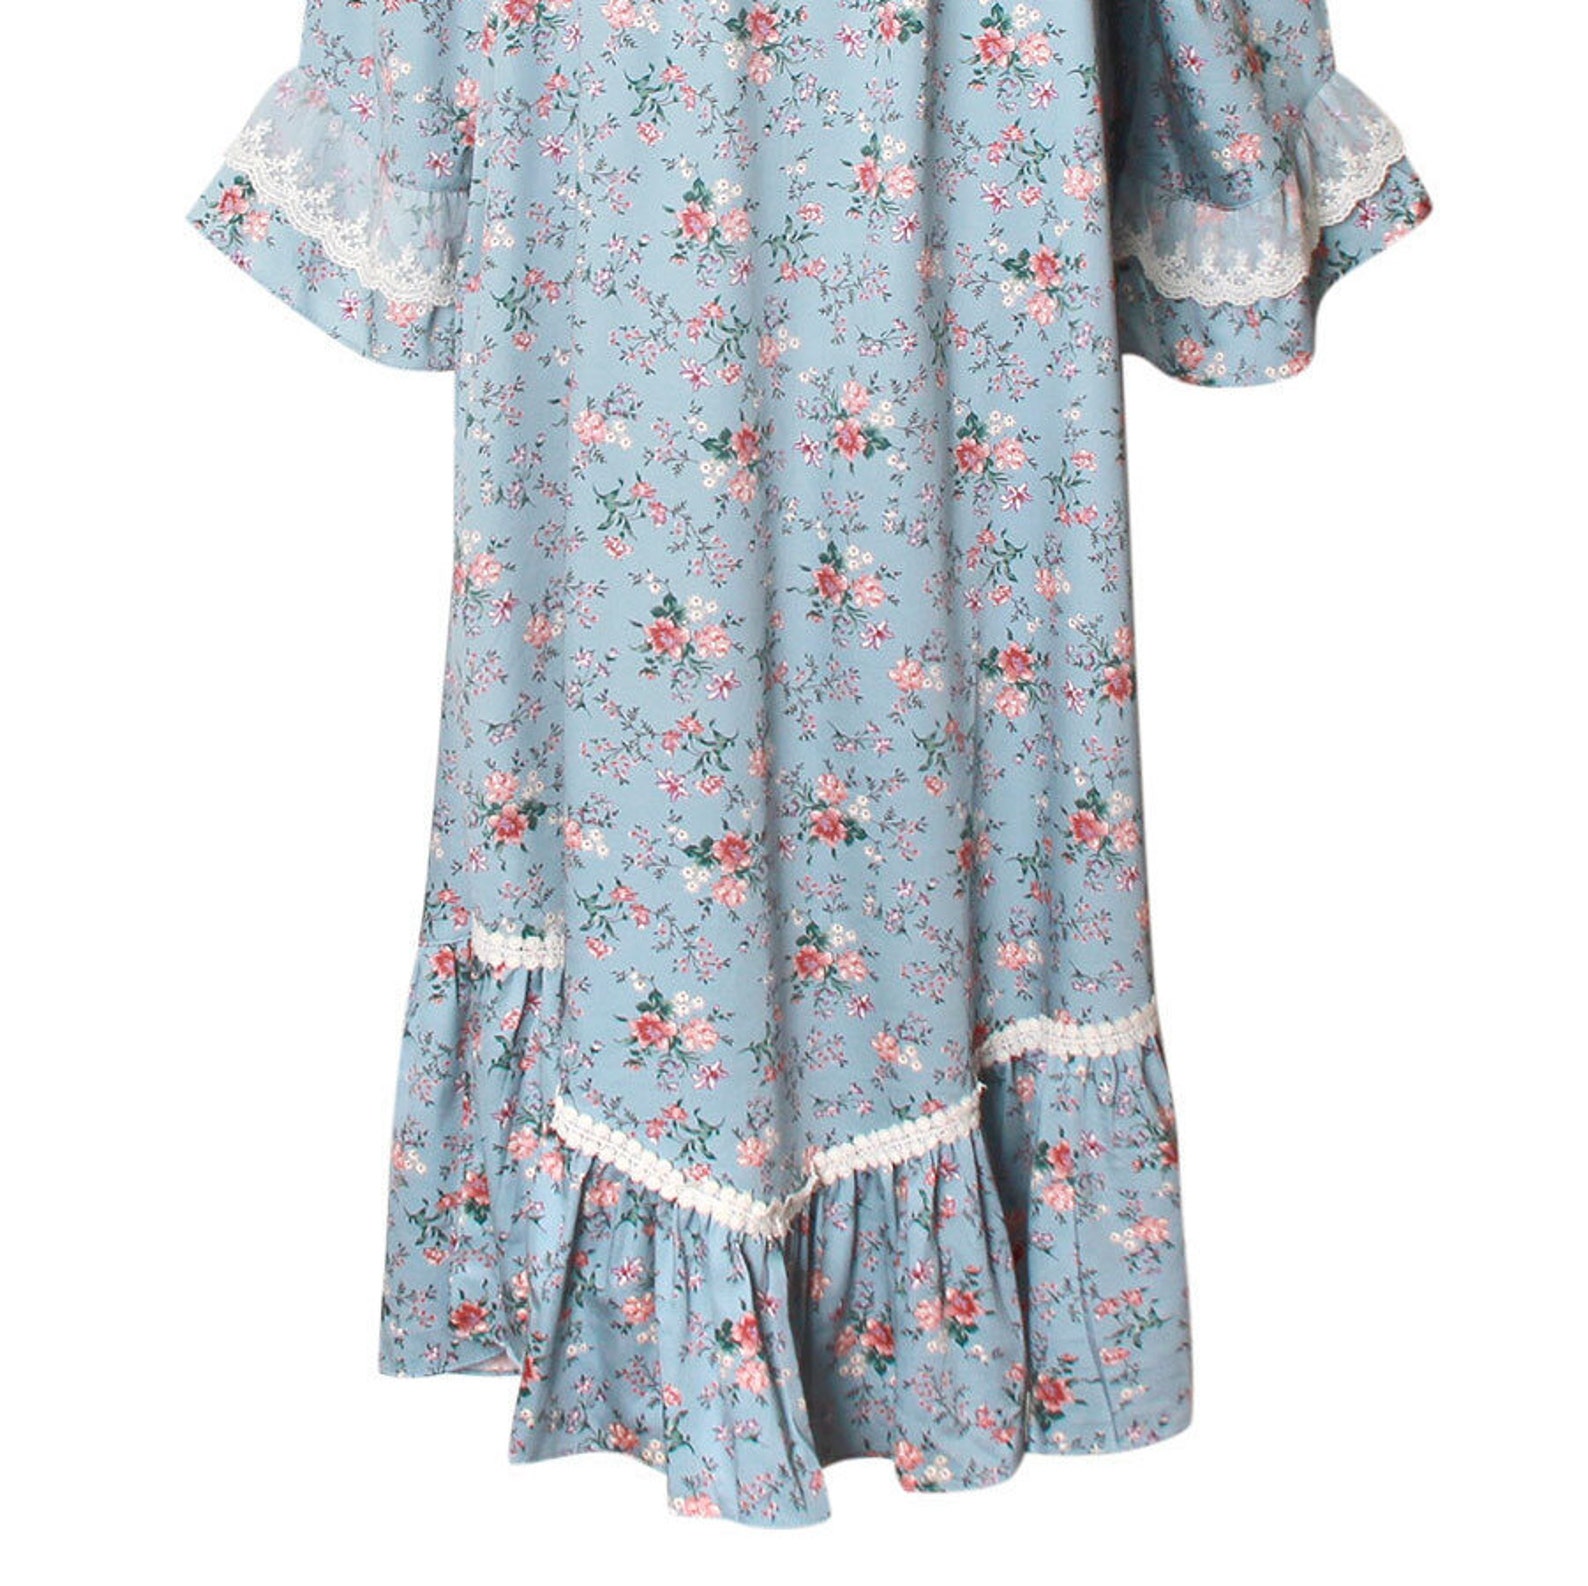 Frill Flower Sky blue Modal Nightgown Women Sleepwear Dress | Etsy